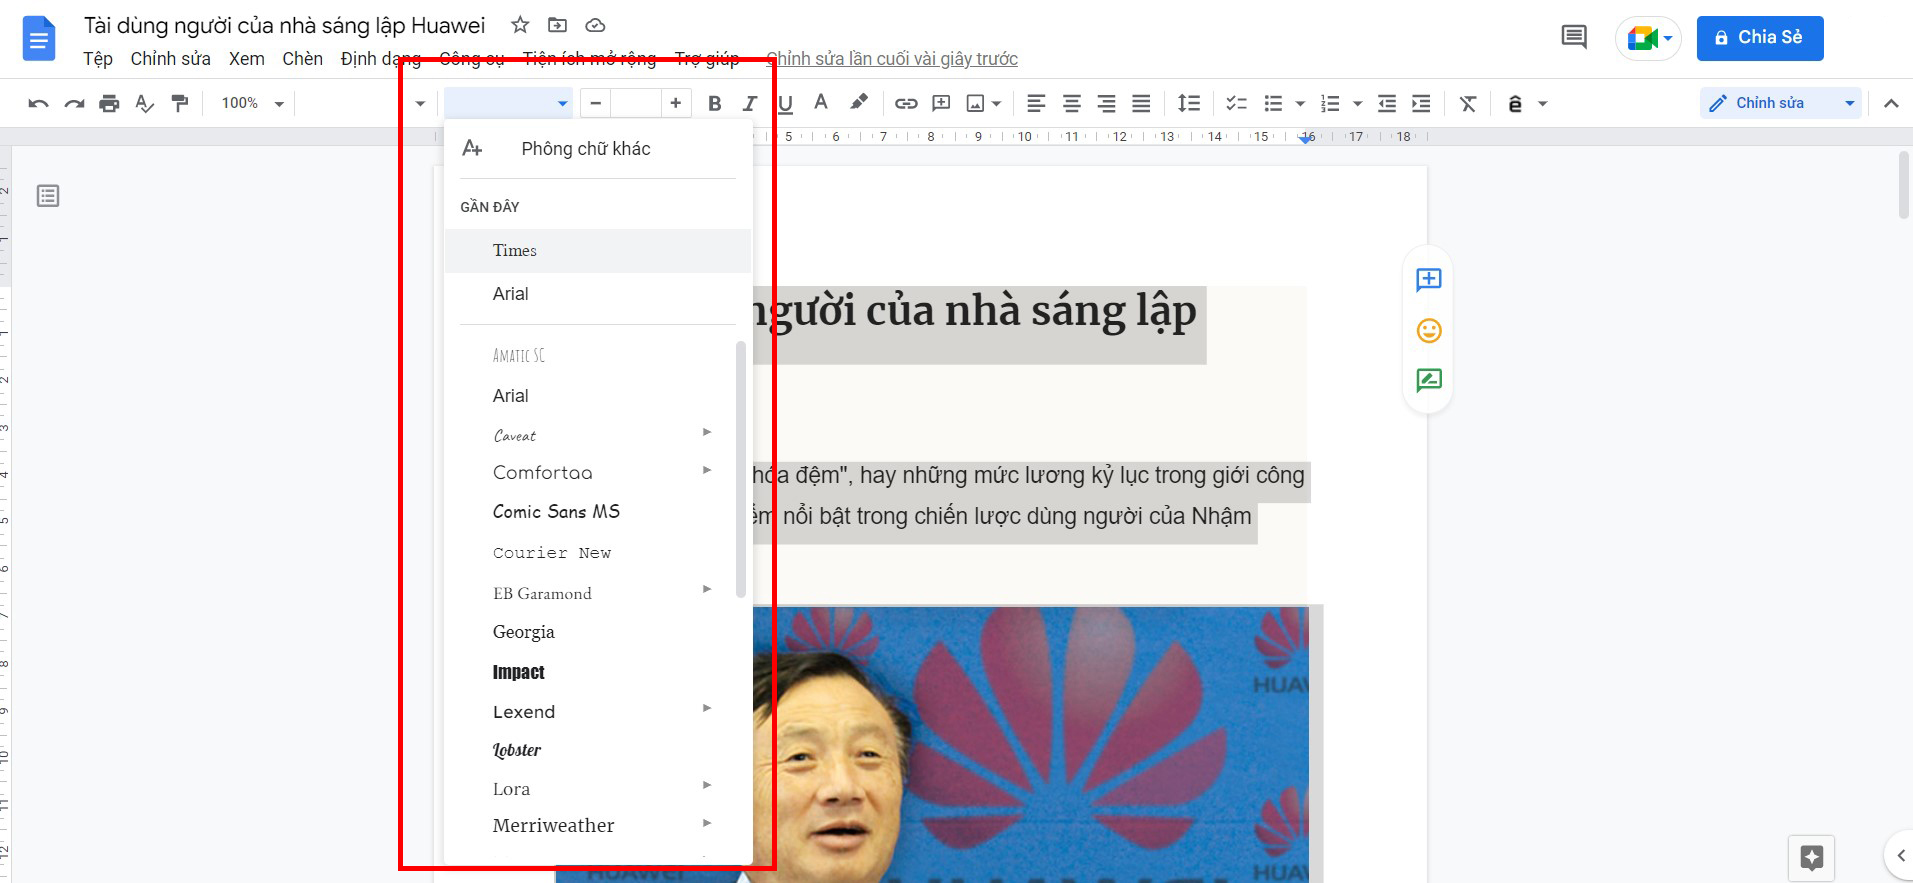 Sửa lỗi font tiếng Việt trên Windows 10: Sử dụng Windows 10 đôi khi gặp phải một số lỗi font tiếng Việt không đáng có. Tuy nhiên, đừng lo lắng vì chúng ta có giải pháp tuyệt vời để khắc phục những lỗi này. Với một số thao tác đơn giản, font tiếng Việt của bạn sẽ hoàn toàn được sửa chữa và trở nên tuyệt vời hơn.